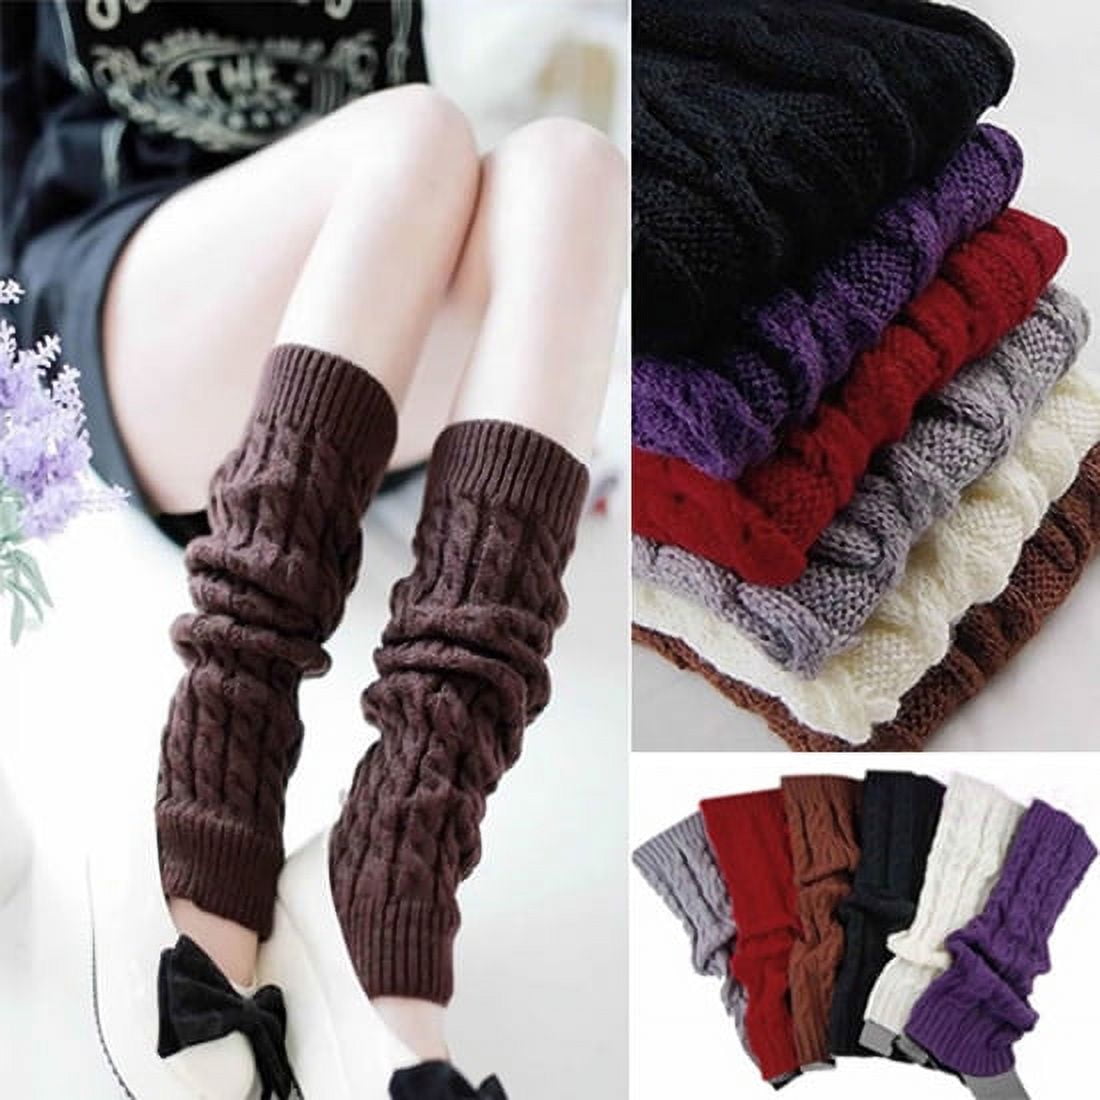 Lomubue Women's Crochet Cable Knit Braided Winter Leg Warmers Boot ...